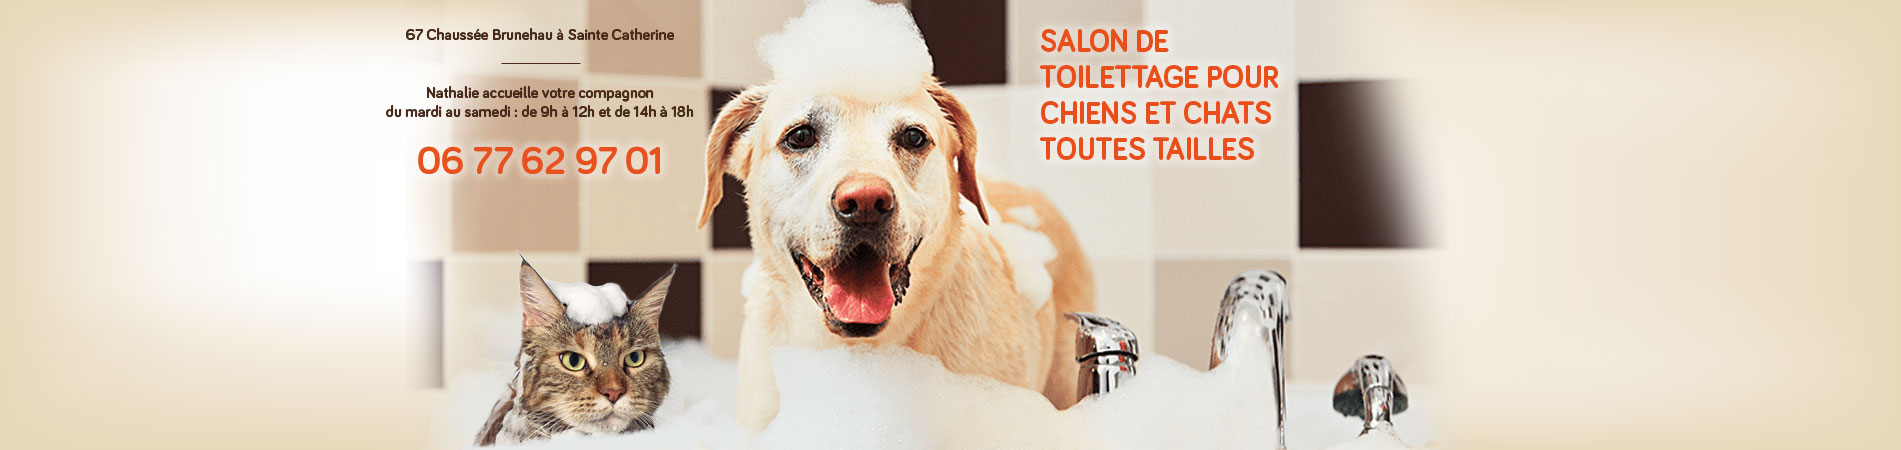 Salon de toilettage pour chiens et chats toutes tailles, Sainte Catherine, Arras